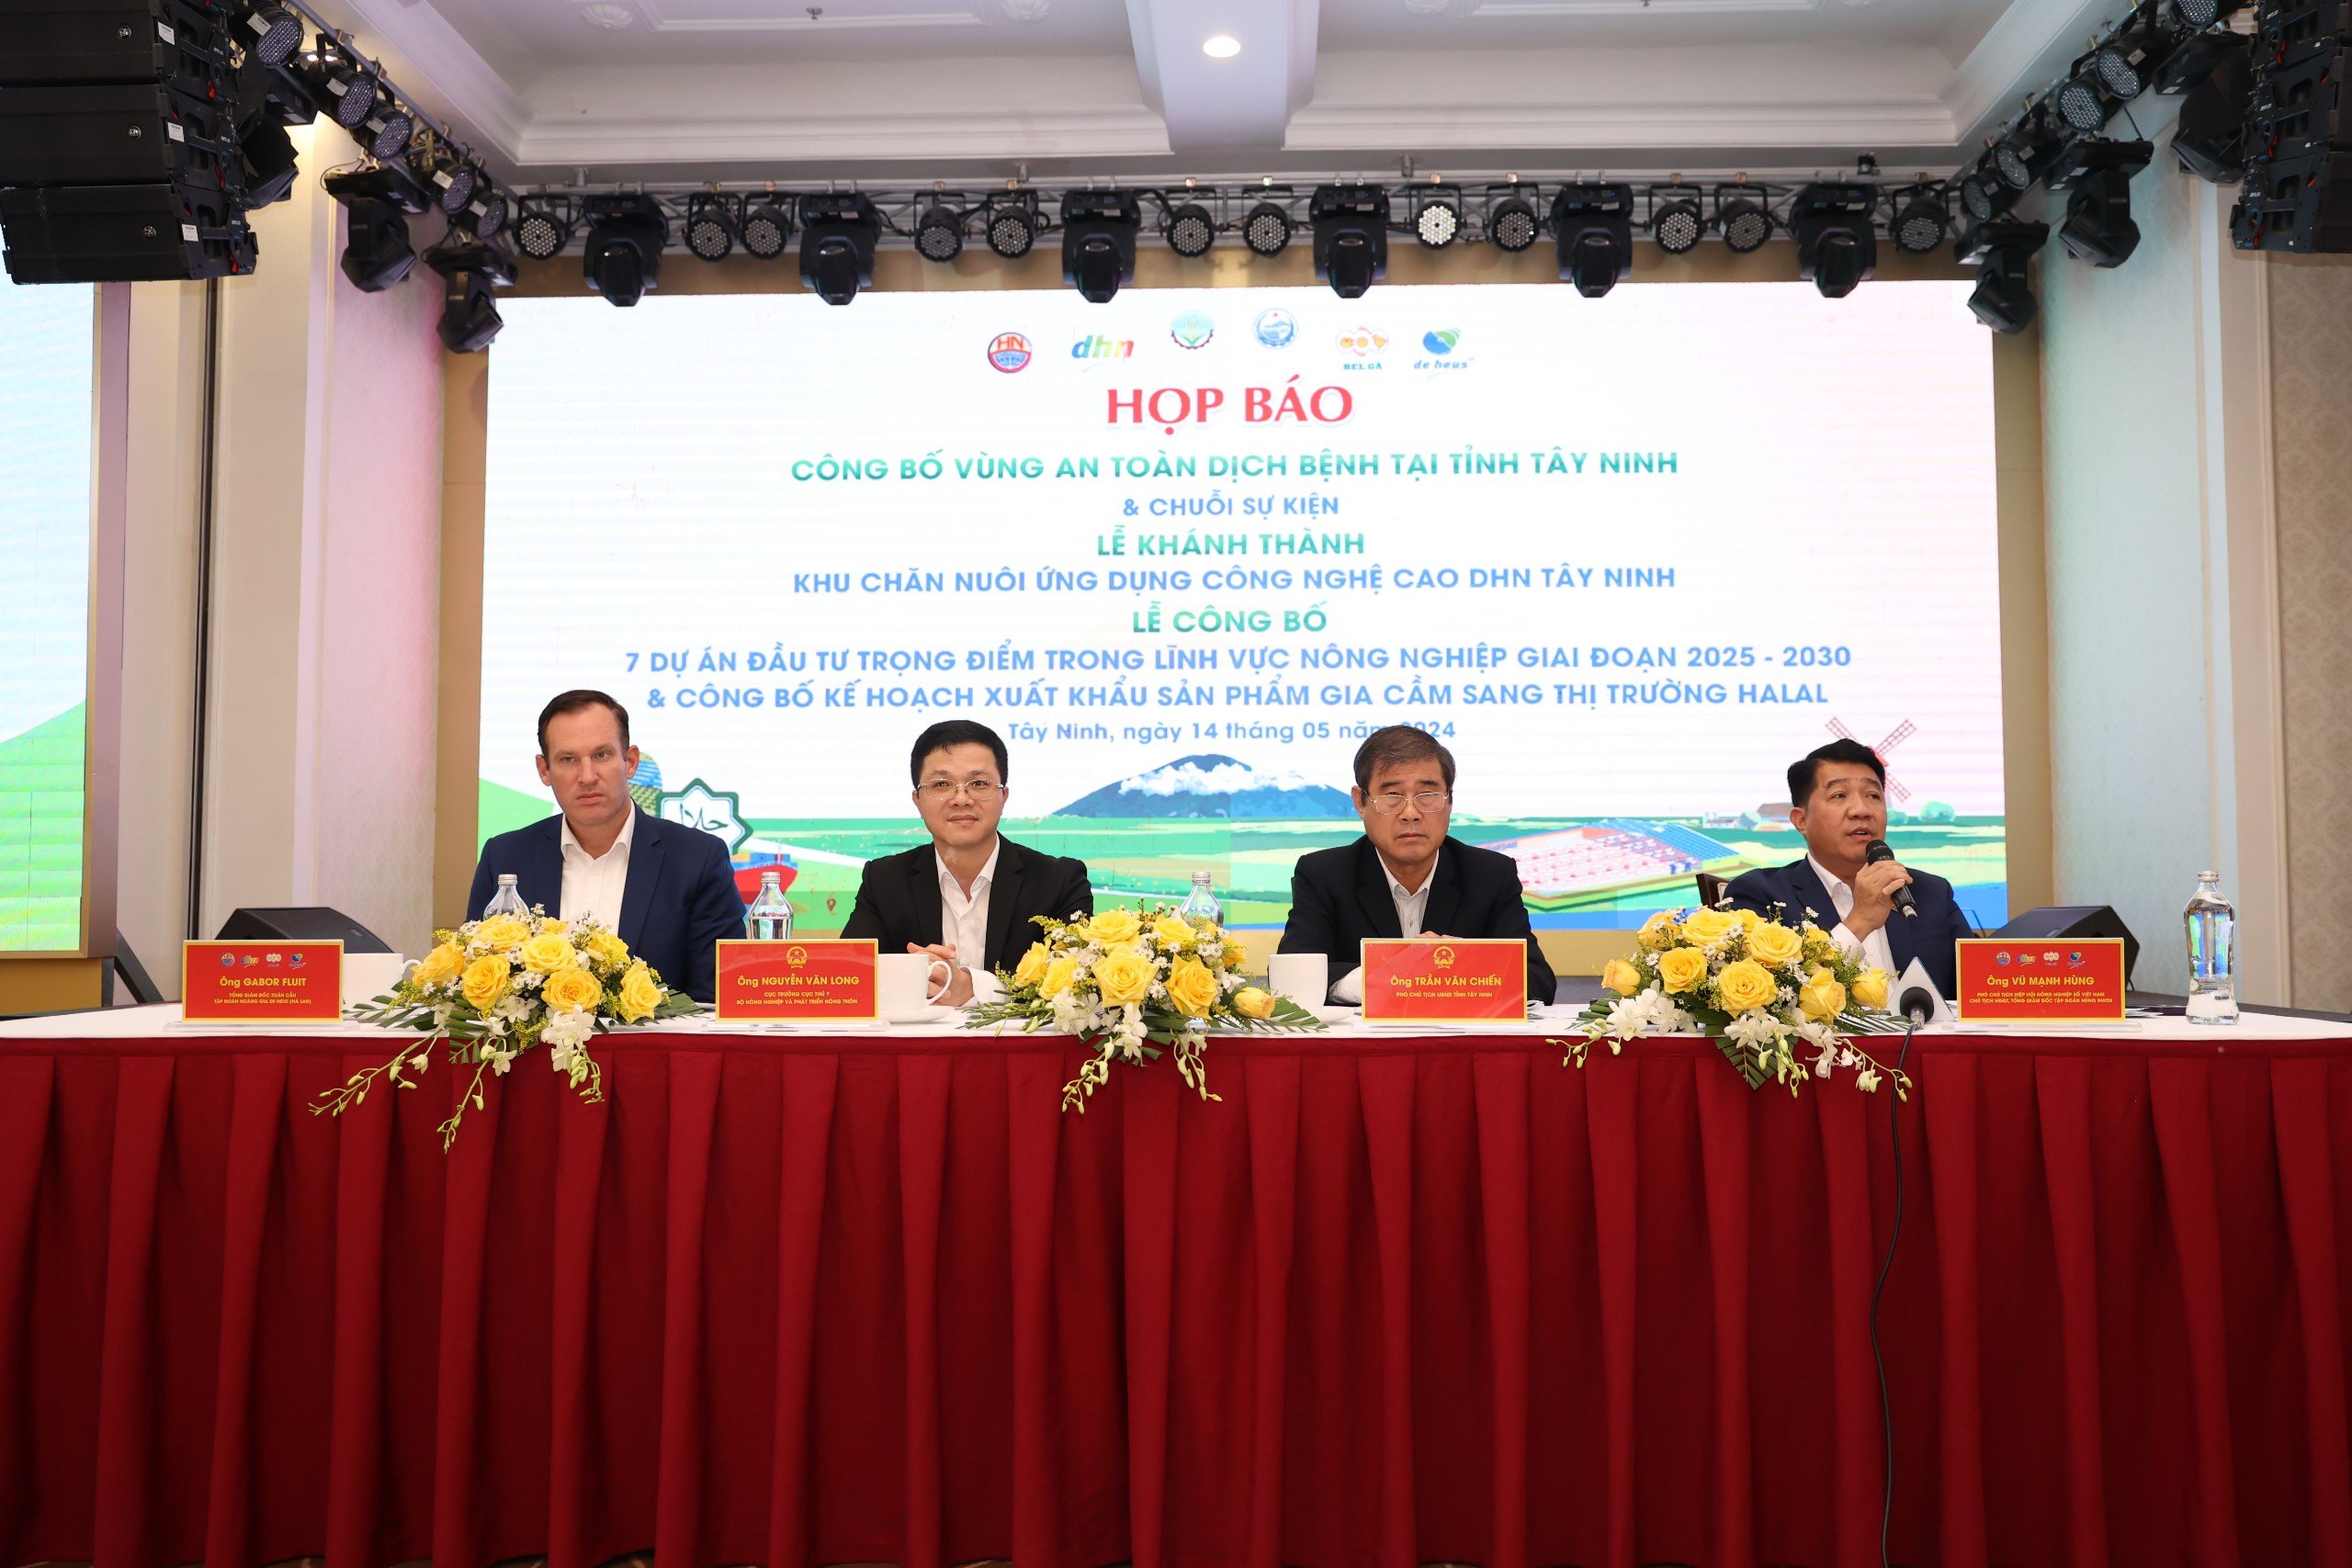 Tây Ninh chuẩn bị đón 1.000 khách dự chuỗi sự kiện lớn ngành nông nghiệp và công bố vùng an toàn dịch bệnh- Ảnh 1.